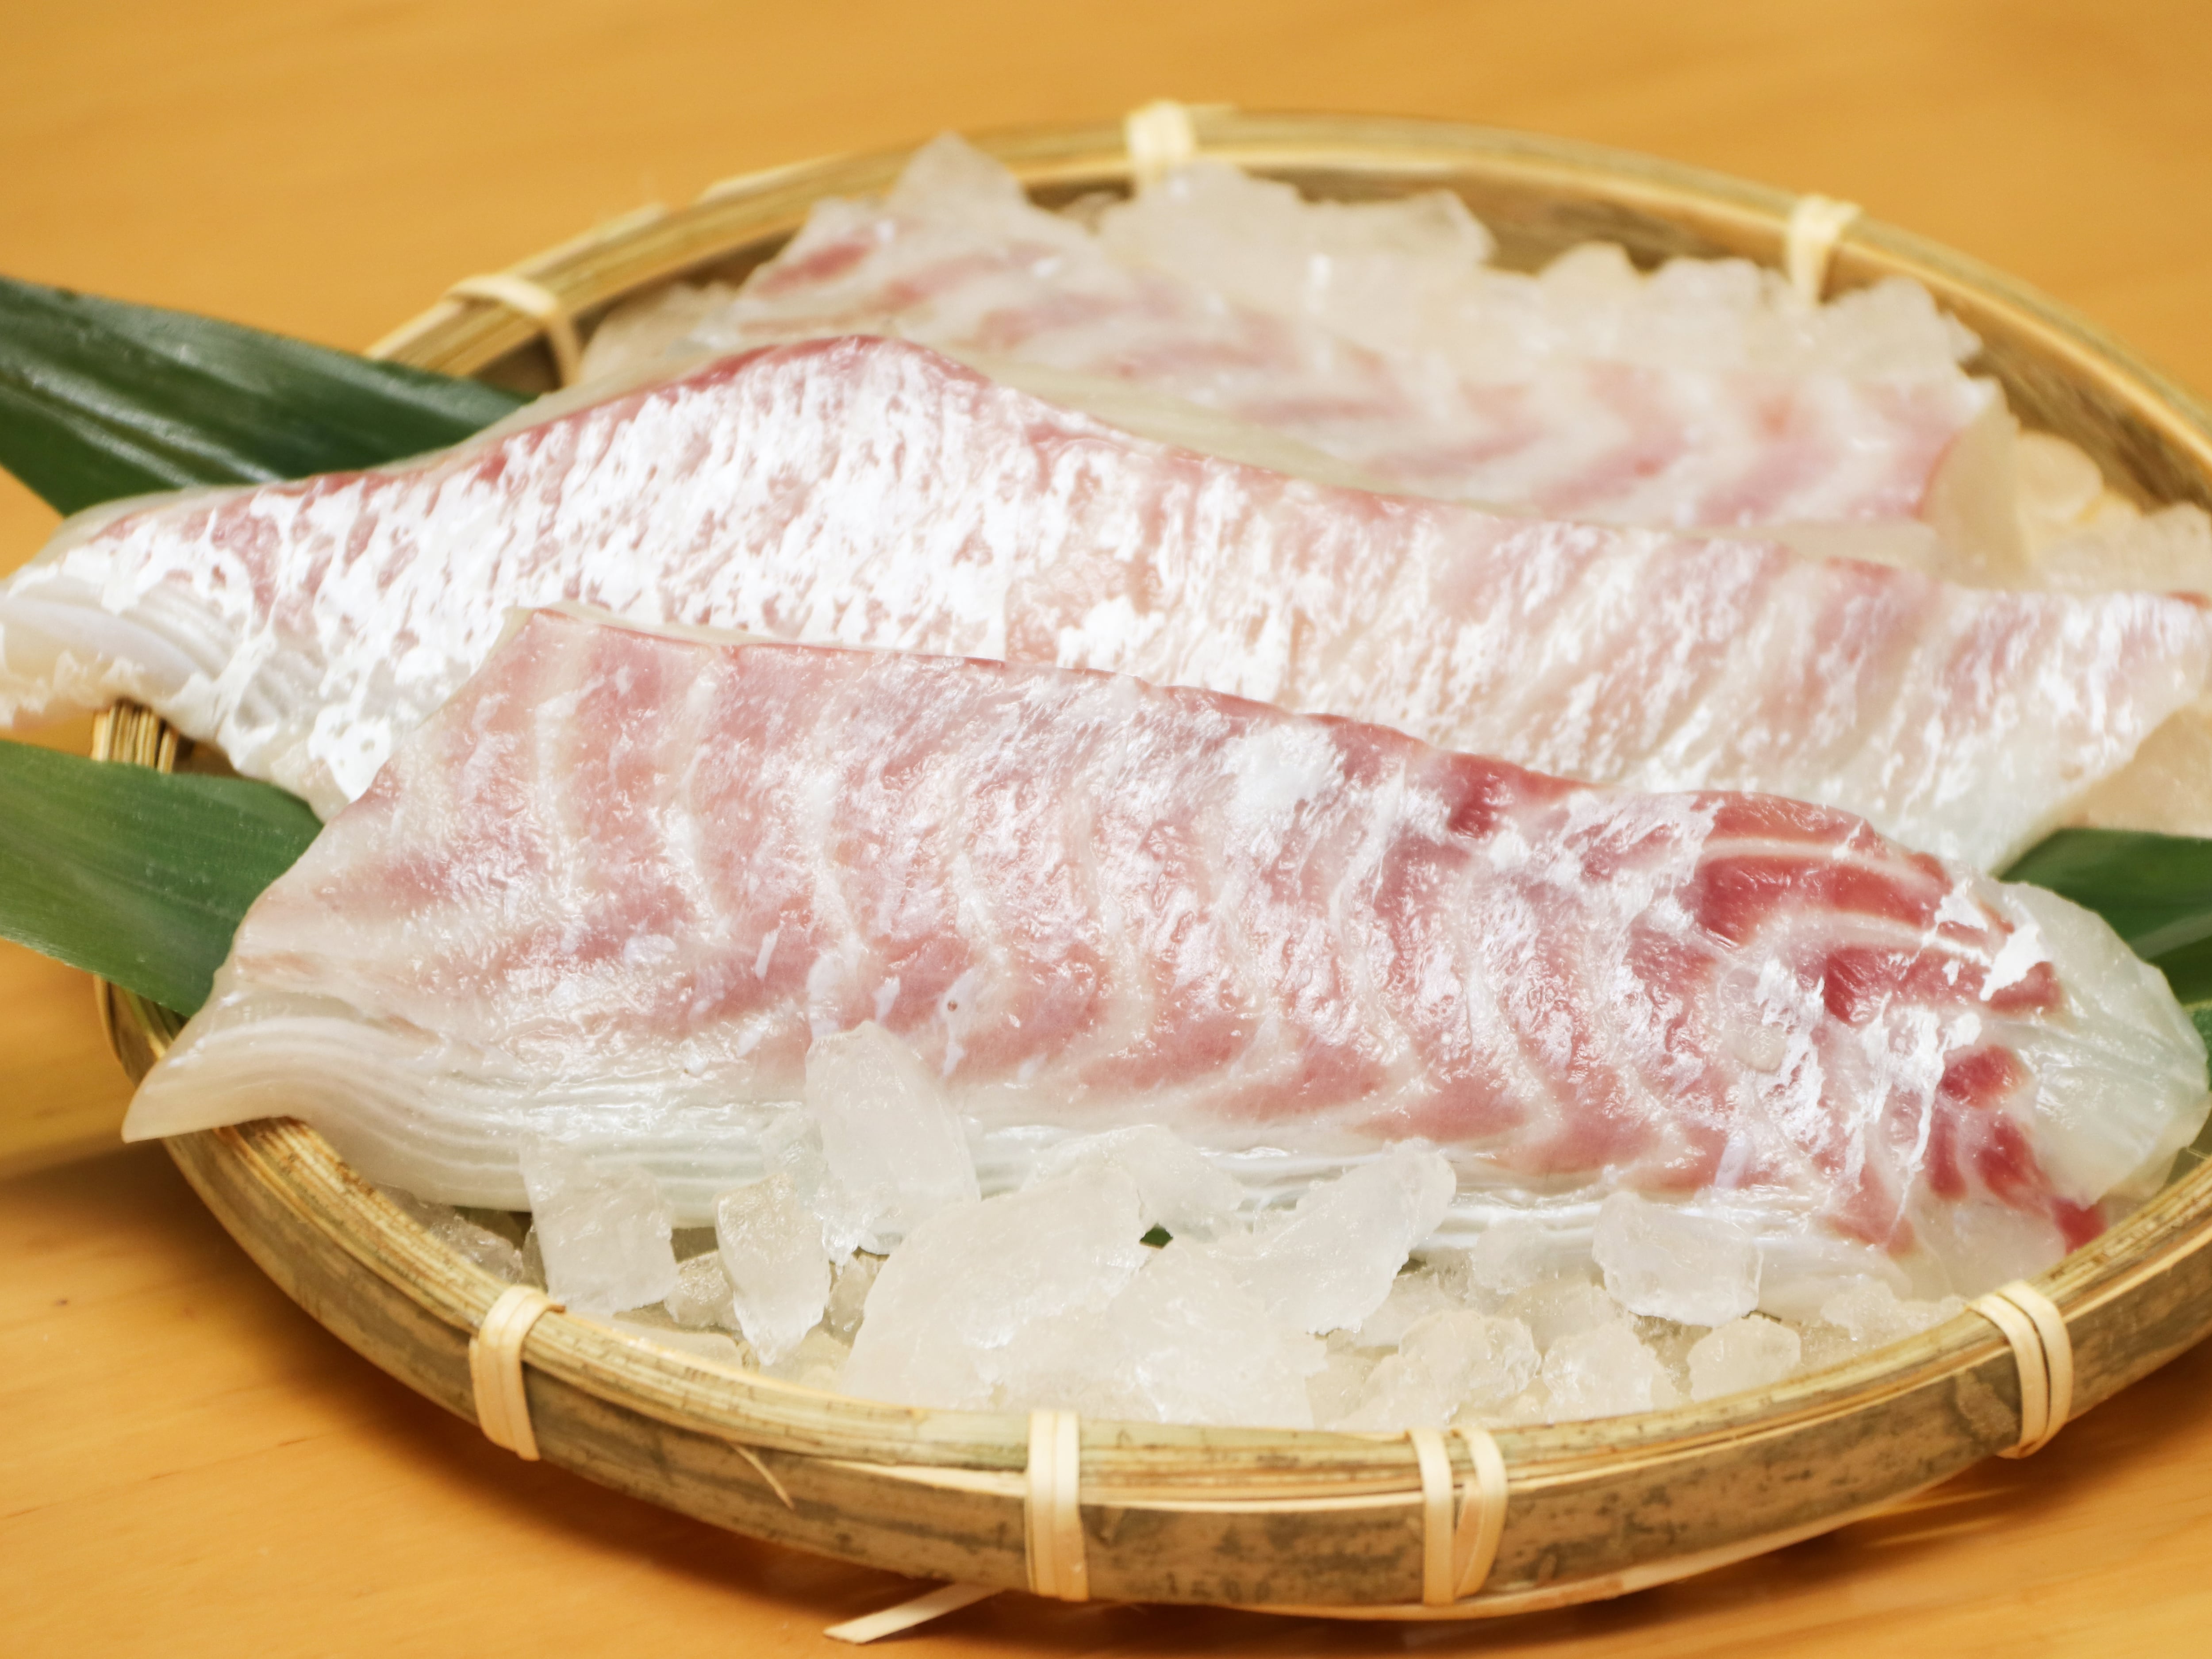 鯛そぼろの栿紗 ふくさ 寿司でお花見なんていかがでしょう おうちで簡単レシピ ブログ 株式会社ふく成 熊本 天草御所浦の養殖とらふぐ